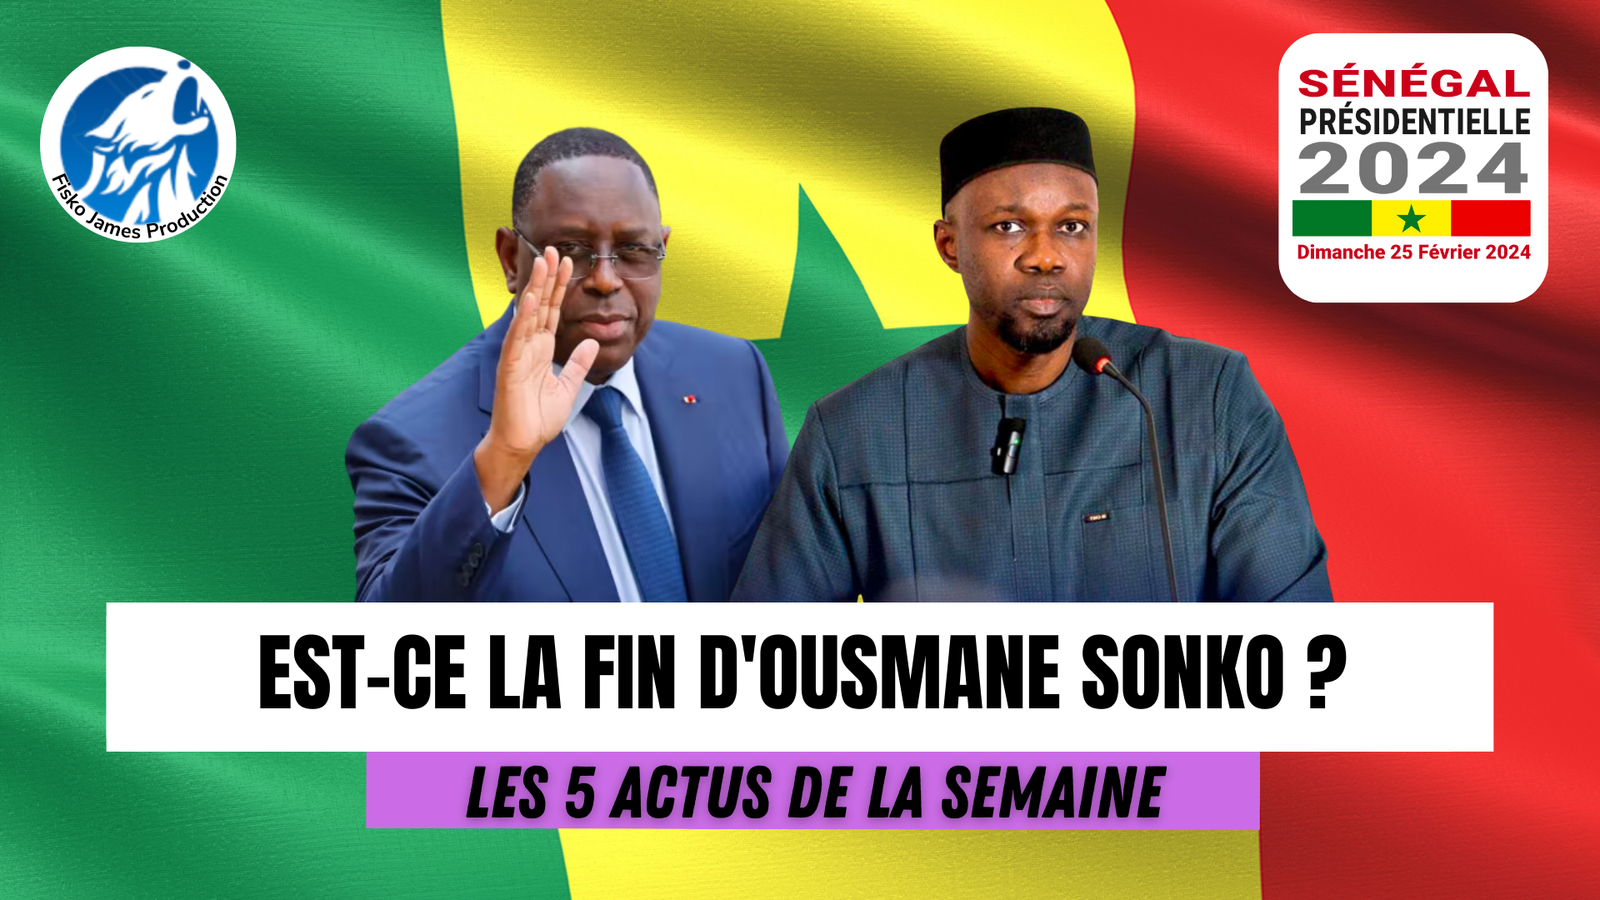 Ousmane Sonko arrêté, situation explosive au Niger, Miss France est orphelin (Actus de la semaine)